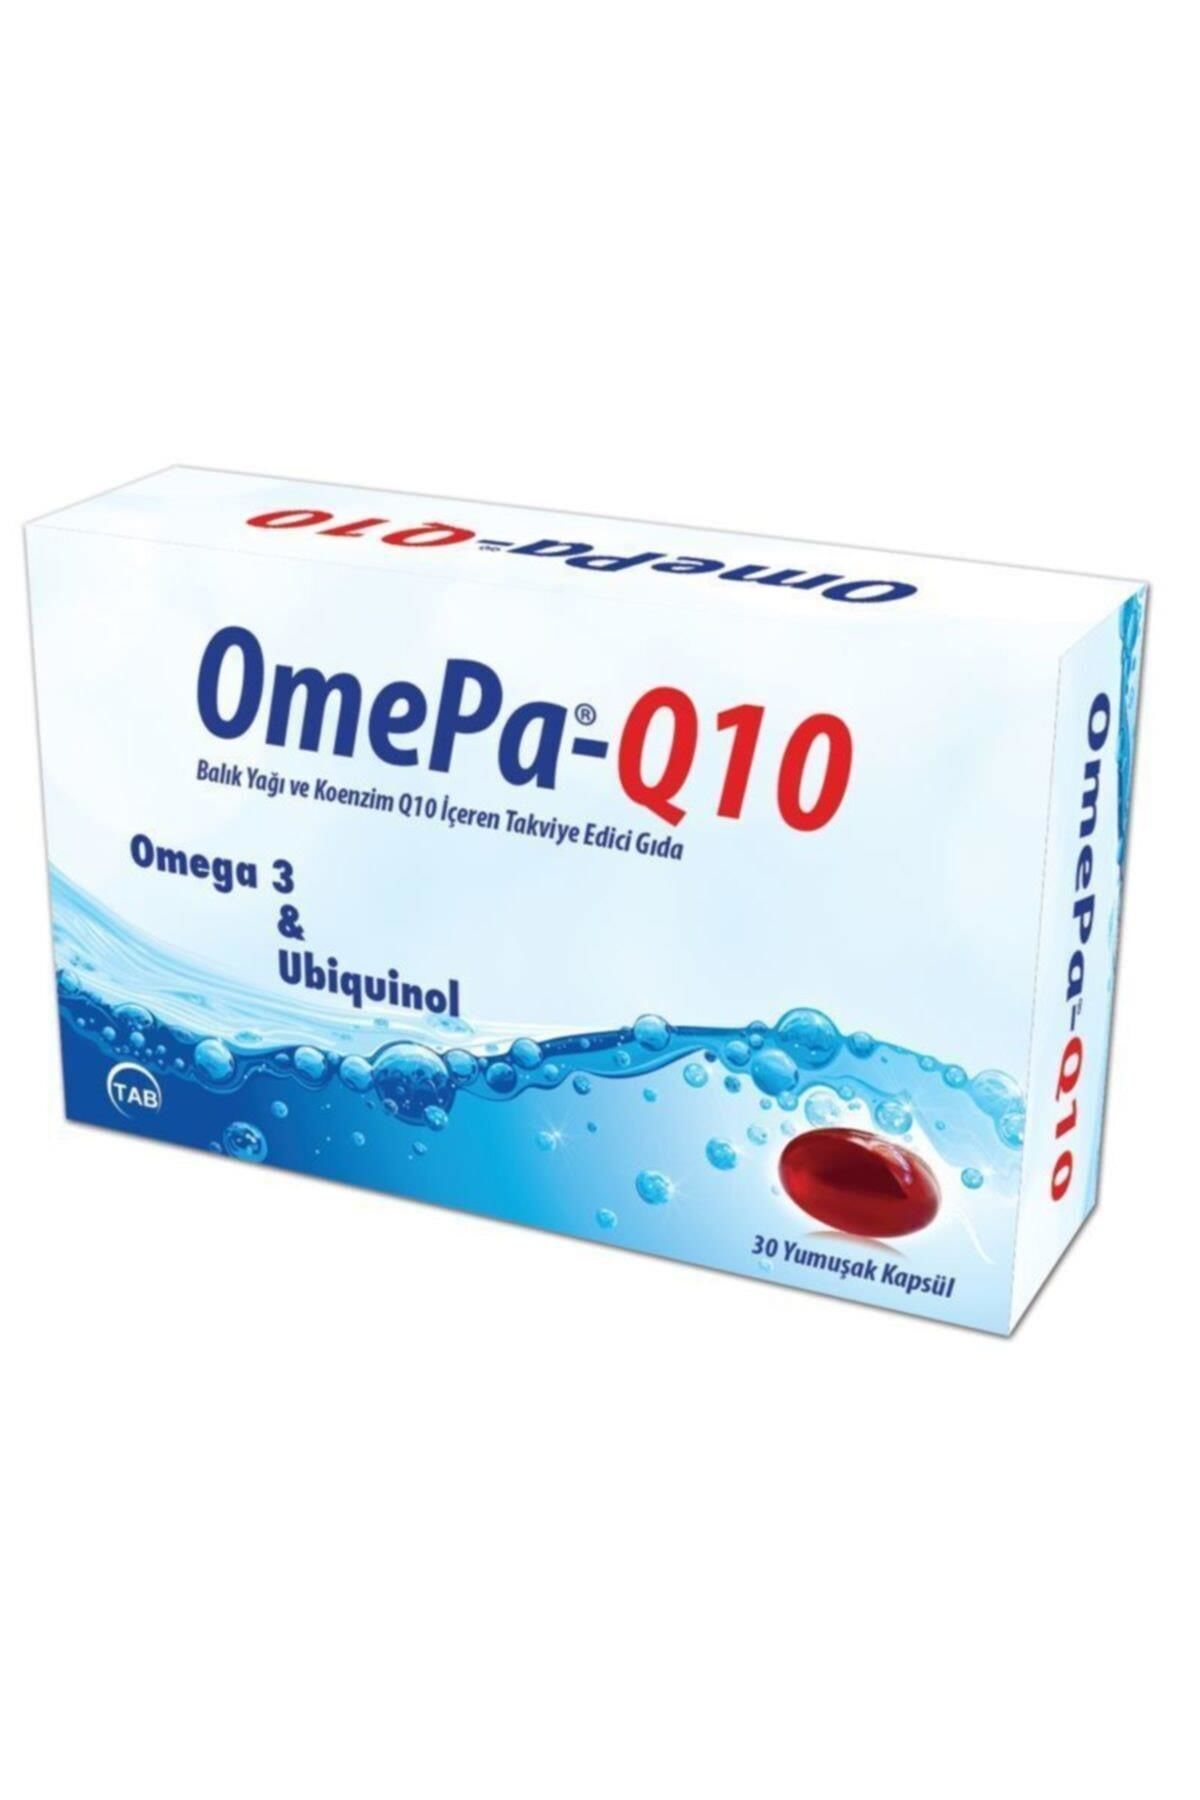 Omepa Q10 Omega 3 Ubiquinol 30 Kapsül-Balık Yağı ve Koenzim Q10